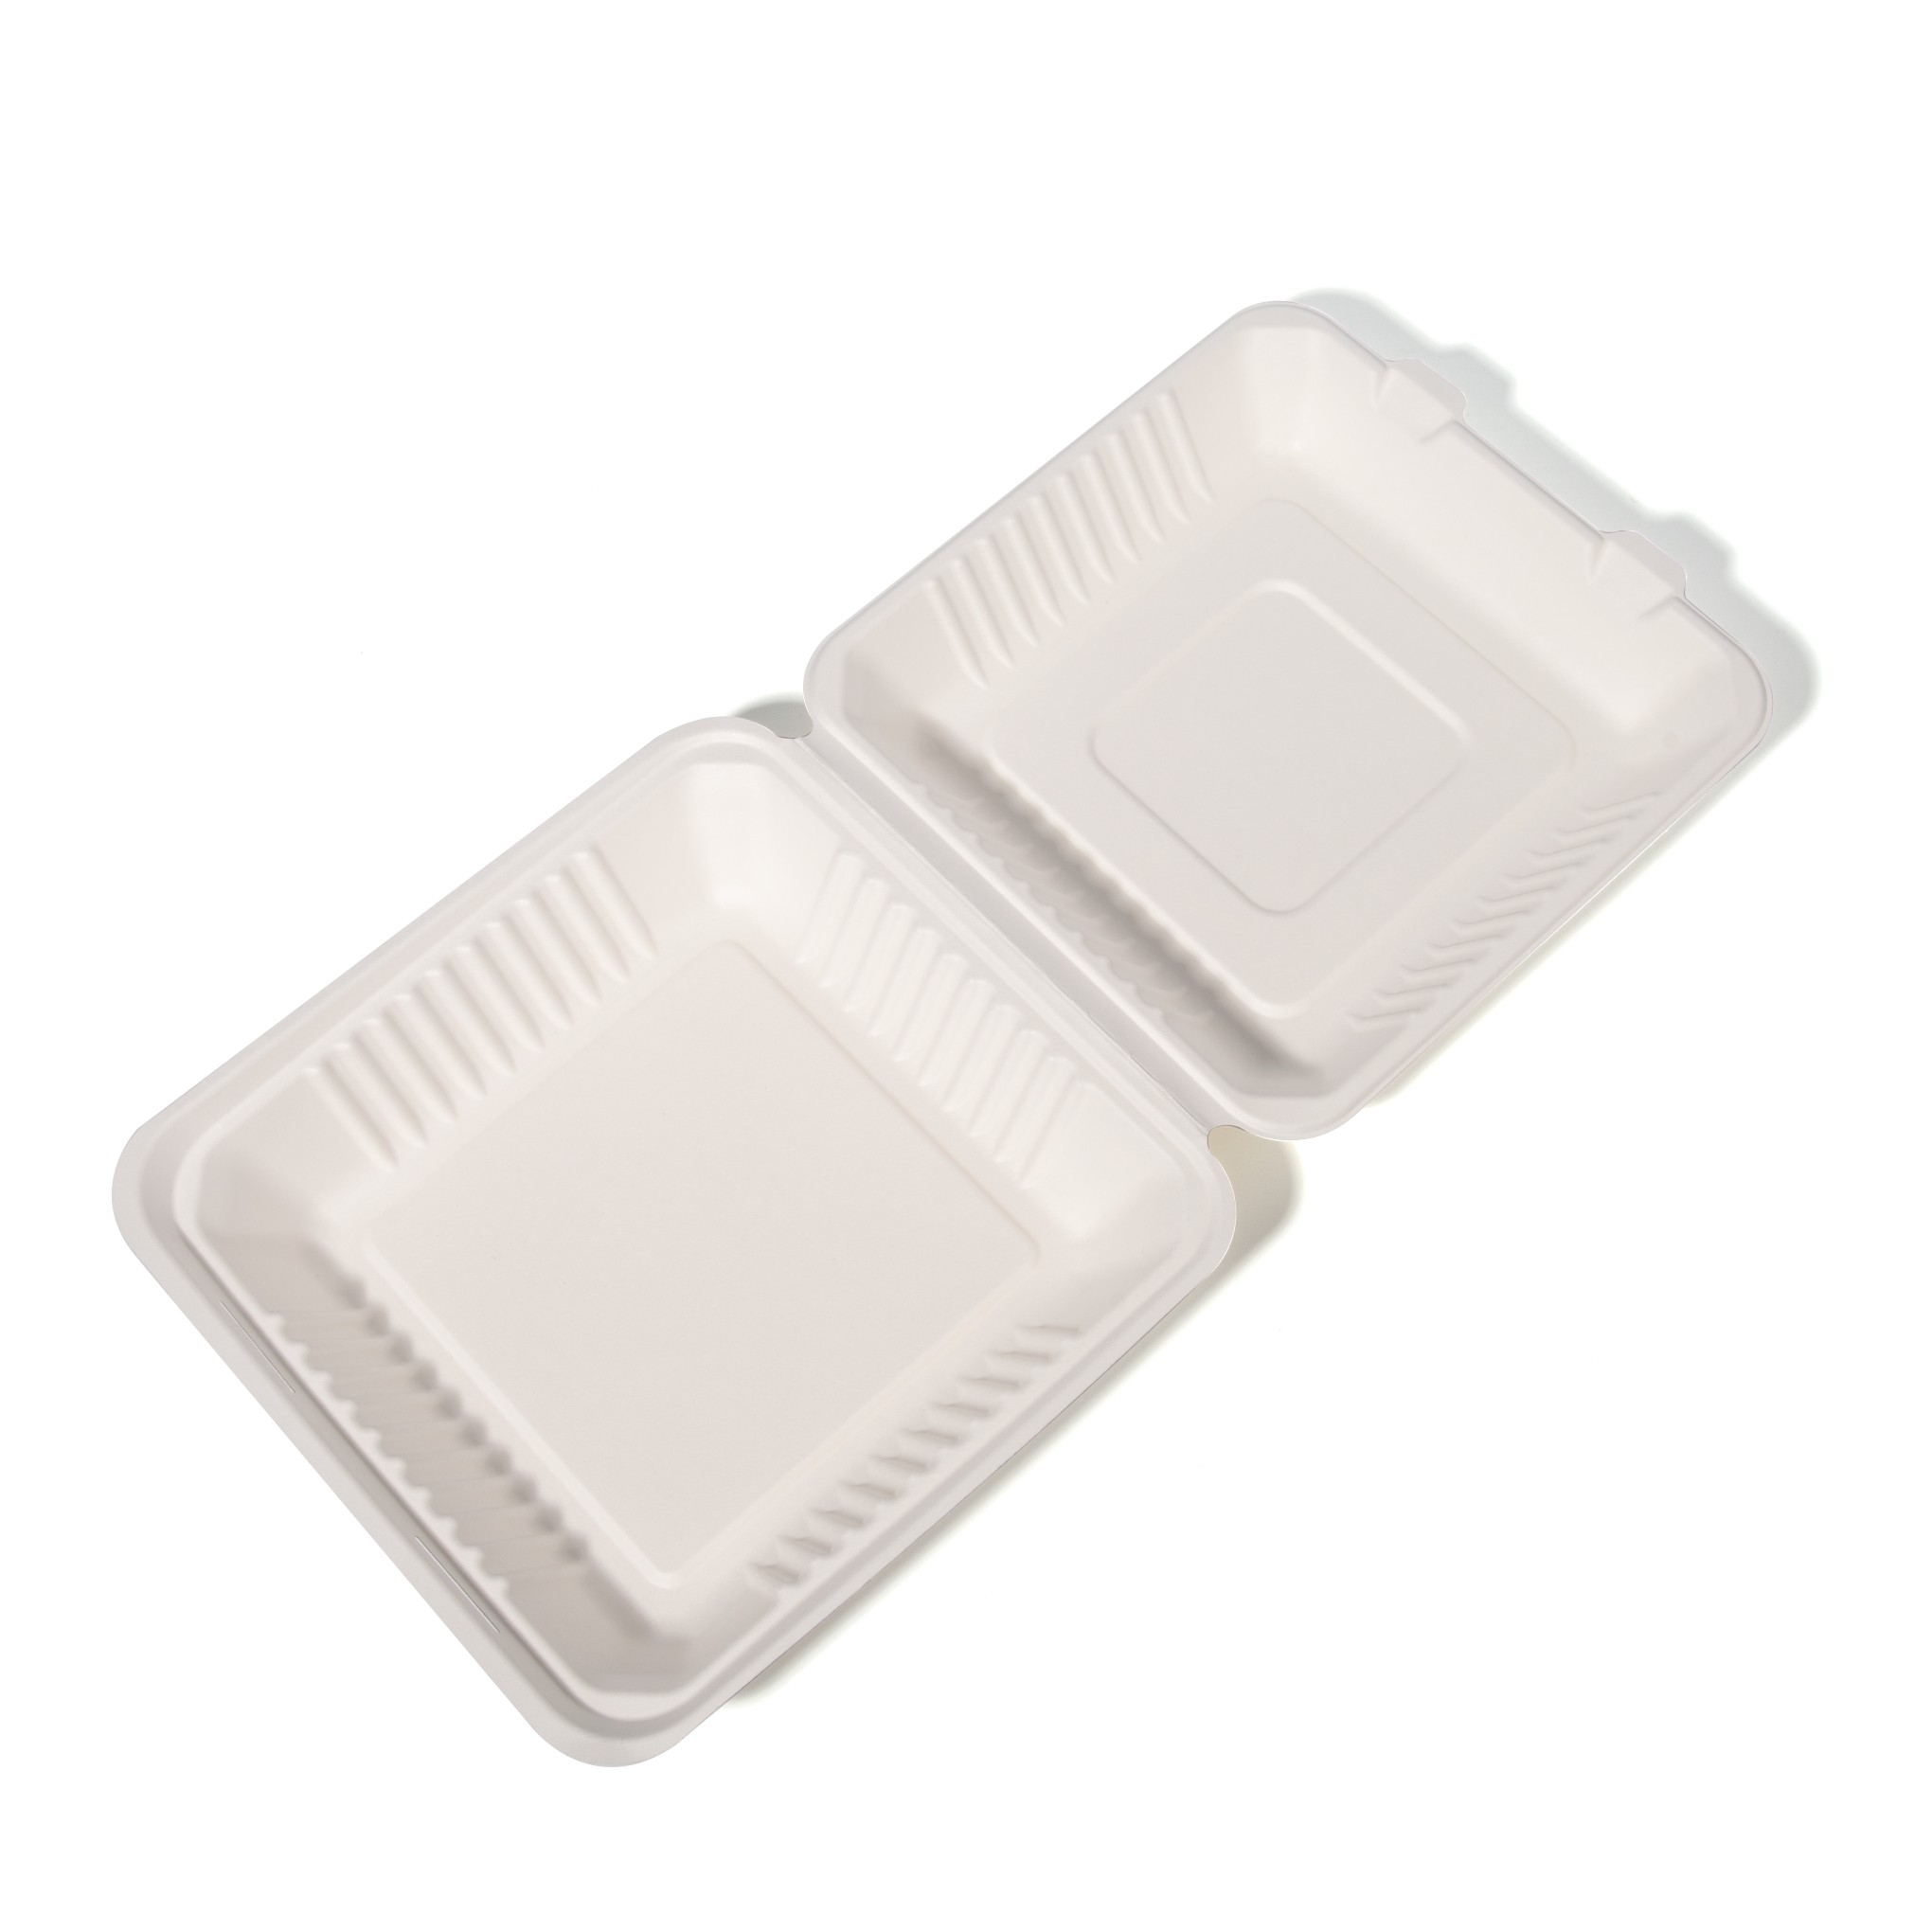 Comprar Caixas de embalagem de alimentos biodegradáveis ​​de bagaço de cana de 8 polegadas e 9 polegadas,Caixas de embalagem de alimentos biodegradáveis ​​de bagaço de cana de 8 polegadas e 9 polegadas Preço,Caixas de embalagem de alimentos biodegradáveis ​​de bagaço de cana de 8 polegadas e 9 polegadas   Marcas,Caixas de embalagem de alimentos biodegradáveis ​​de bagaço de cana de 8 polegadas e 9 polegadas Fabricante,Caixas de embalagem de alimentos biodegradáveis ​​de bagaço de cana de 8 polegadas e 9 polegadas Mercado,Caixas de embalagem de alimentos biodegradáveis ​​de bagaço de cana de 8 polegadas e 9 polegadas Companhia,